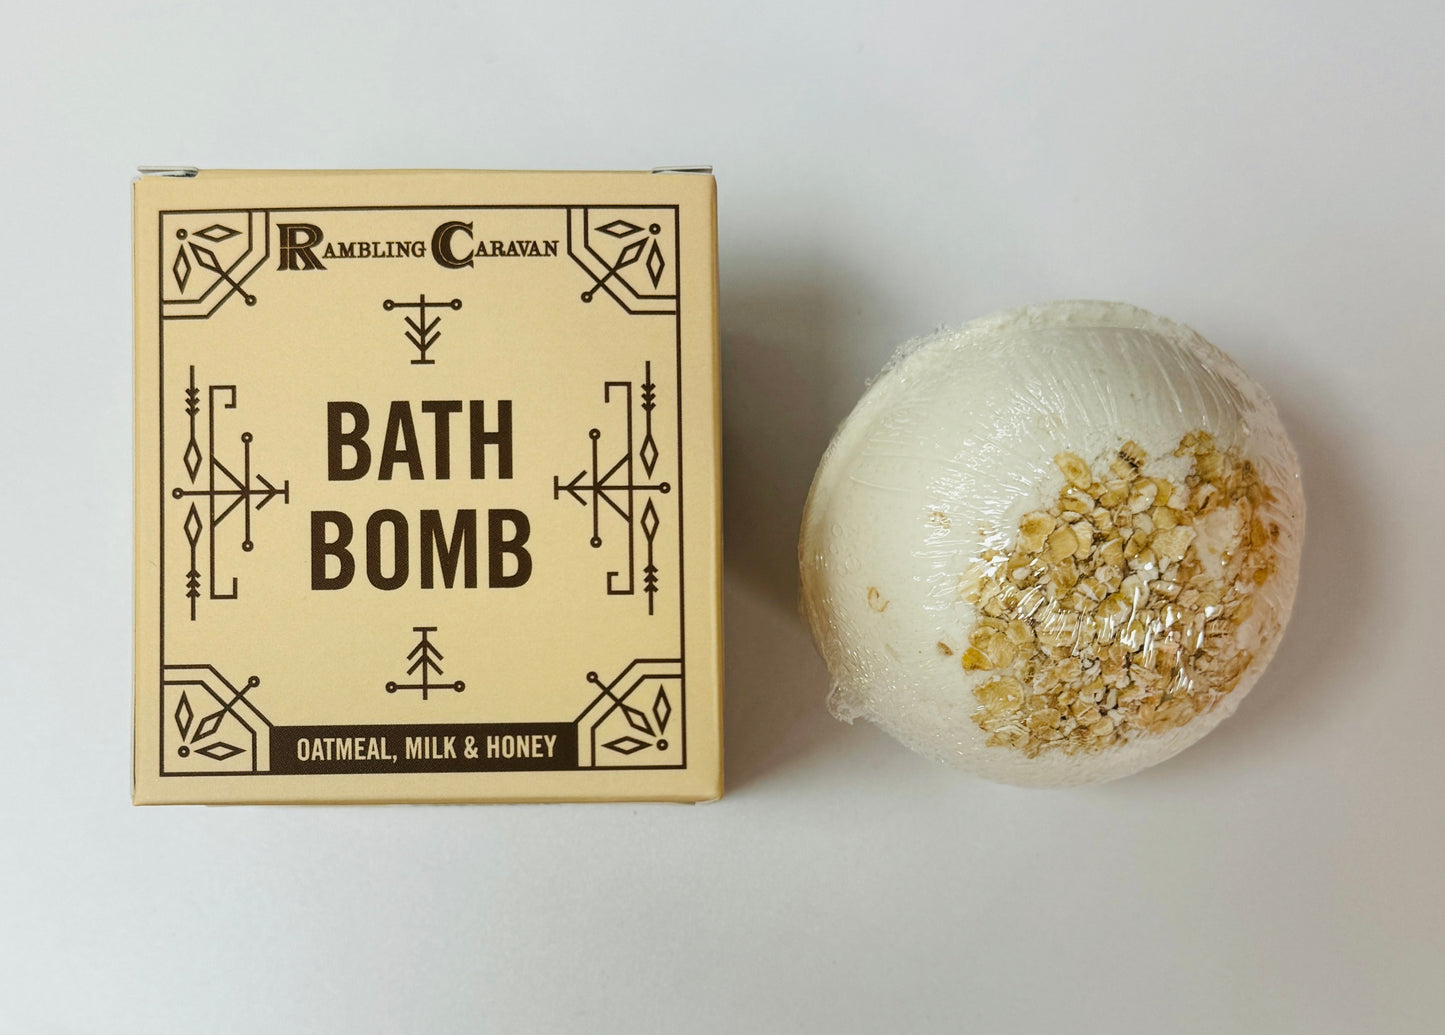 Bath Bomb - Oatmeal, Milk & Honey